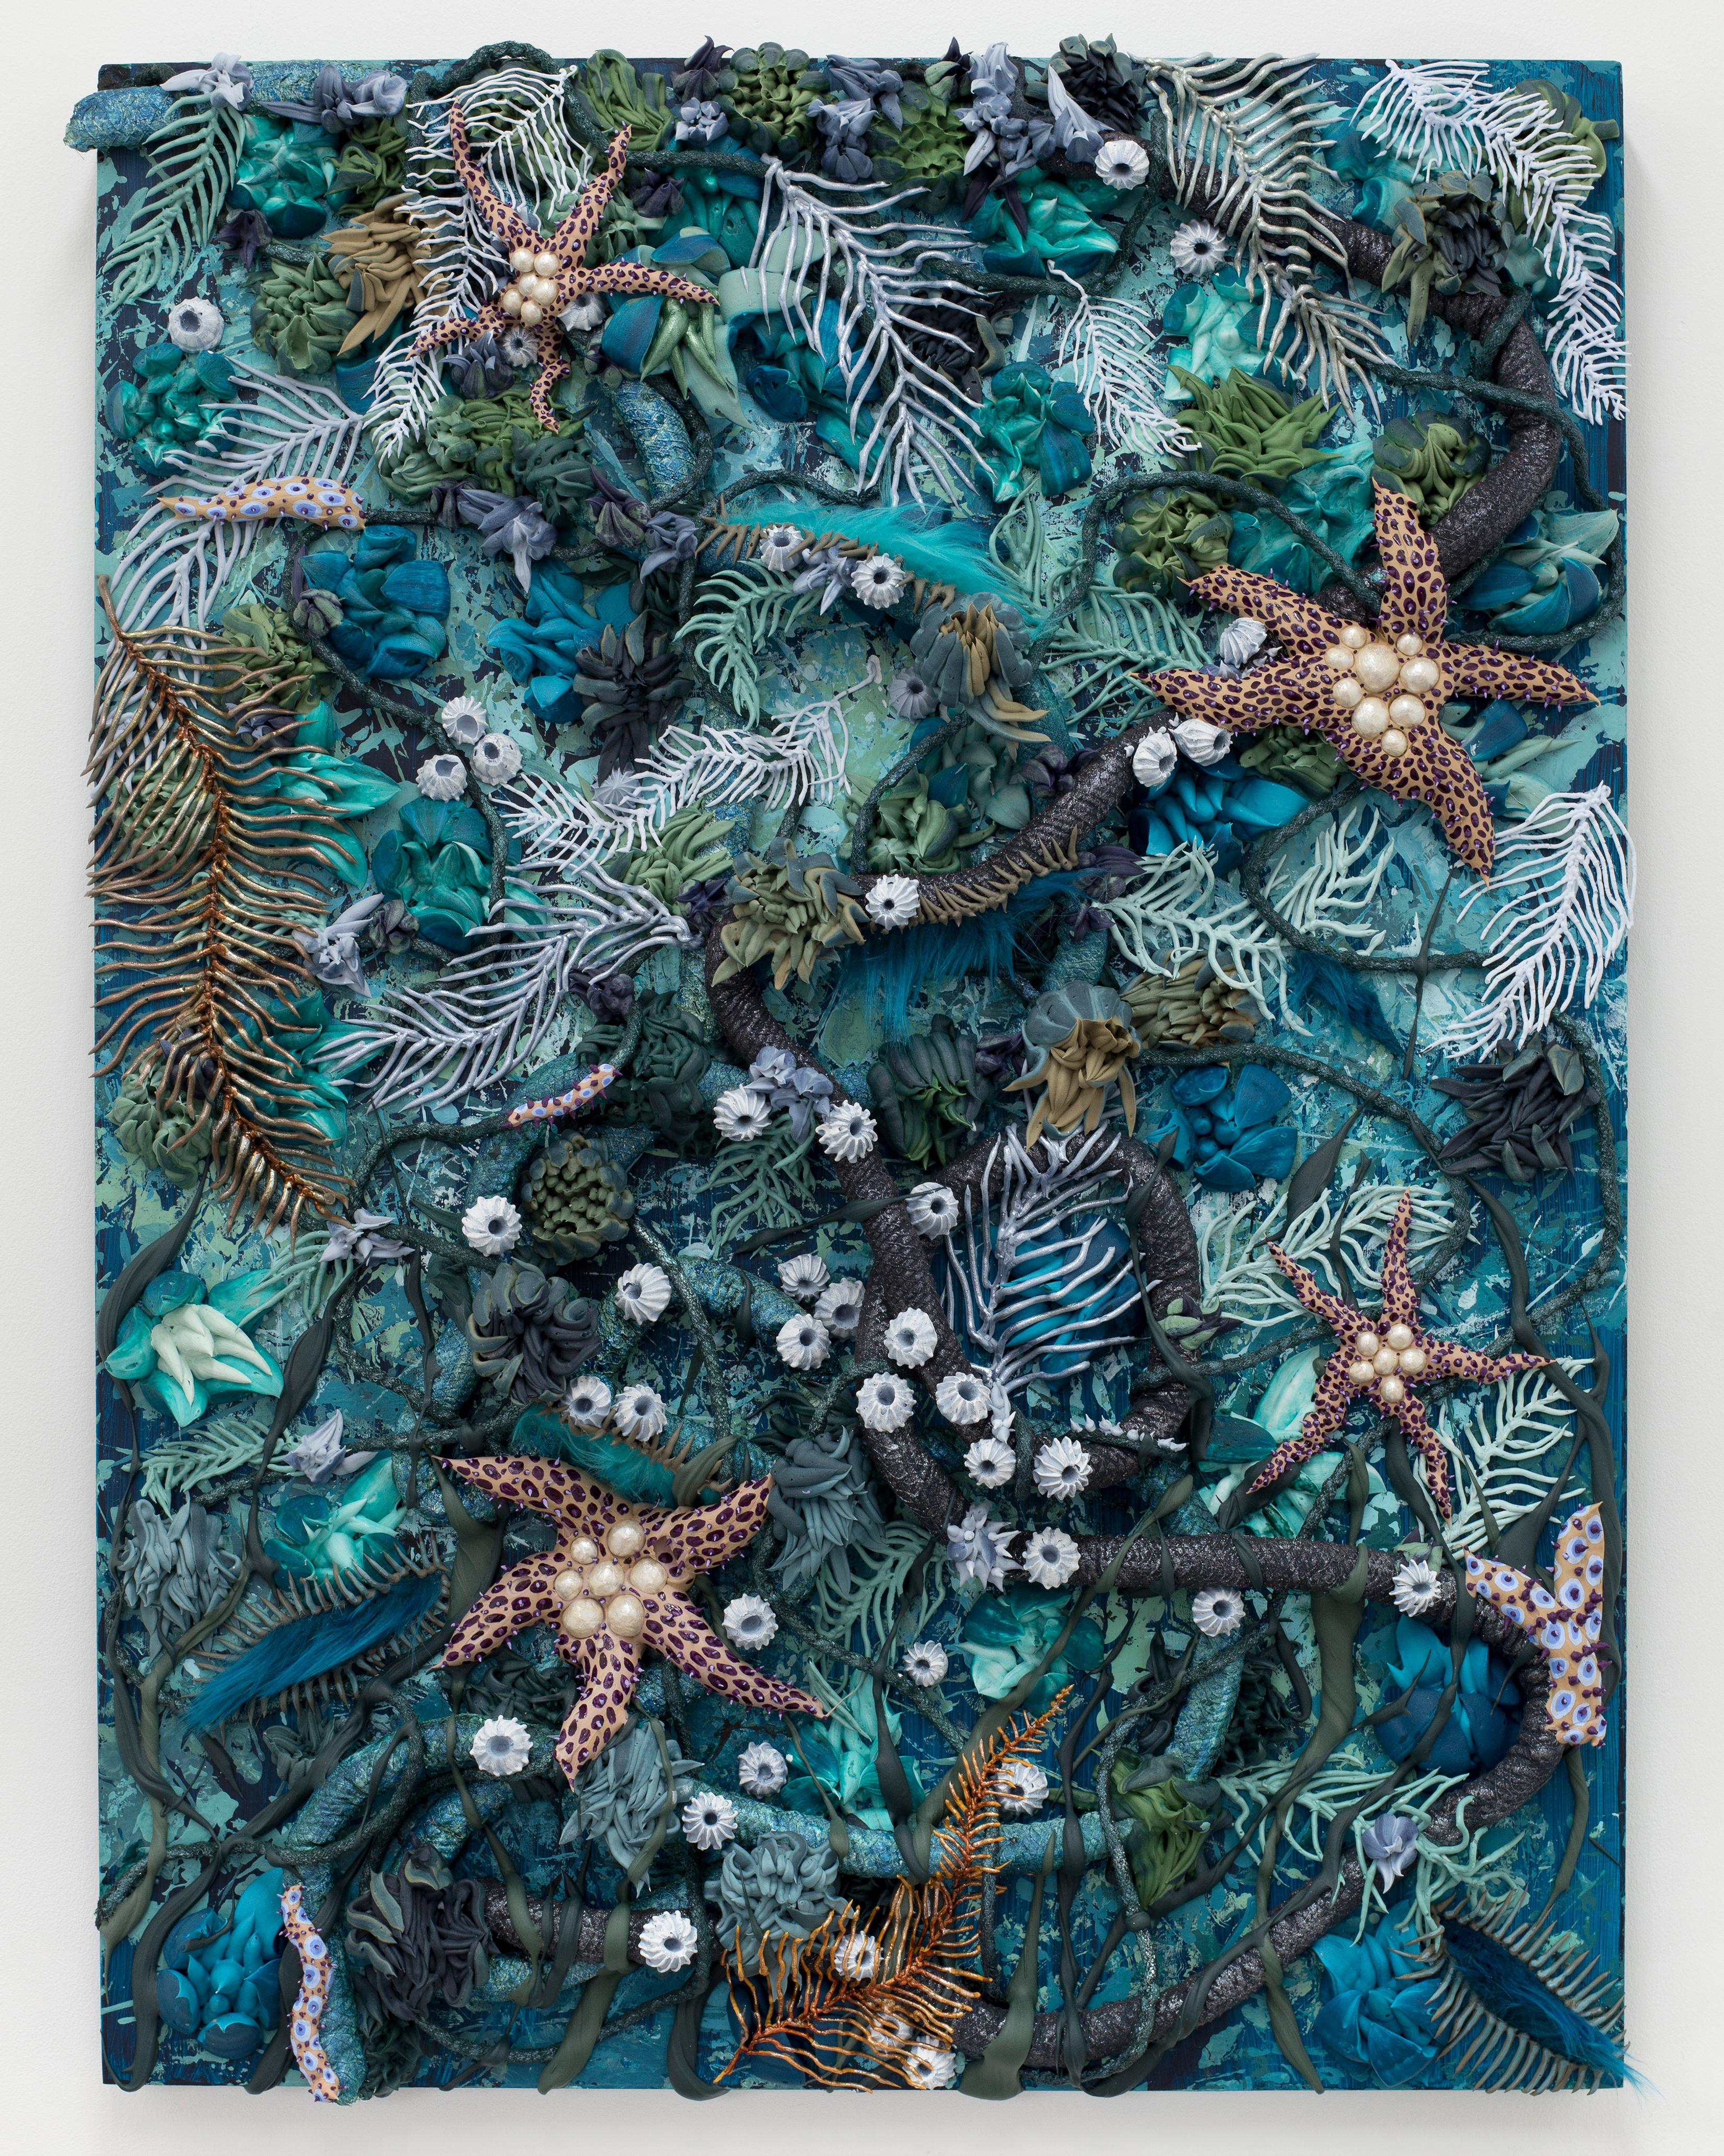 Underwater Ocean Seascape Textural Painting by Seren Morey - Aquafur Dreams